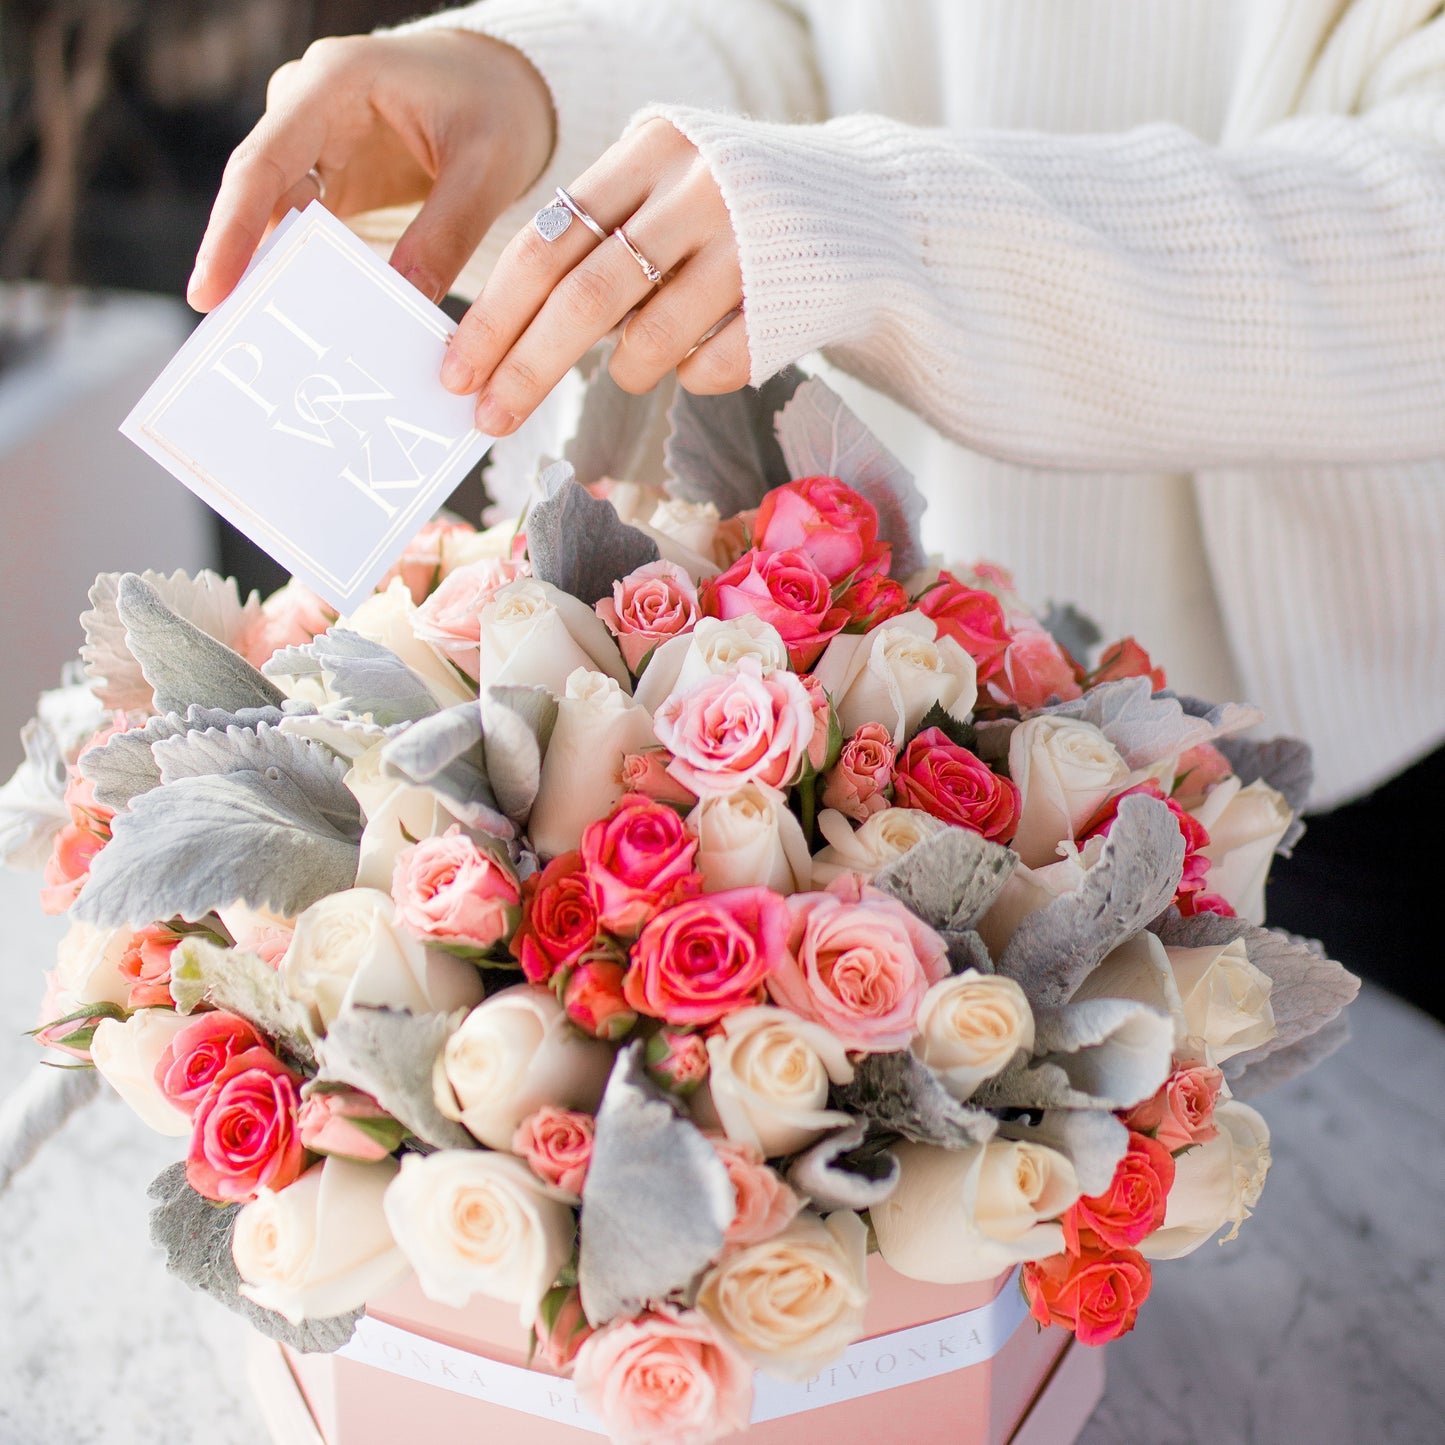 Pivonka Flores Monterrey. Caja octagonal con cincuenta rosas, mini rosas y follaje.